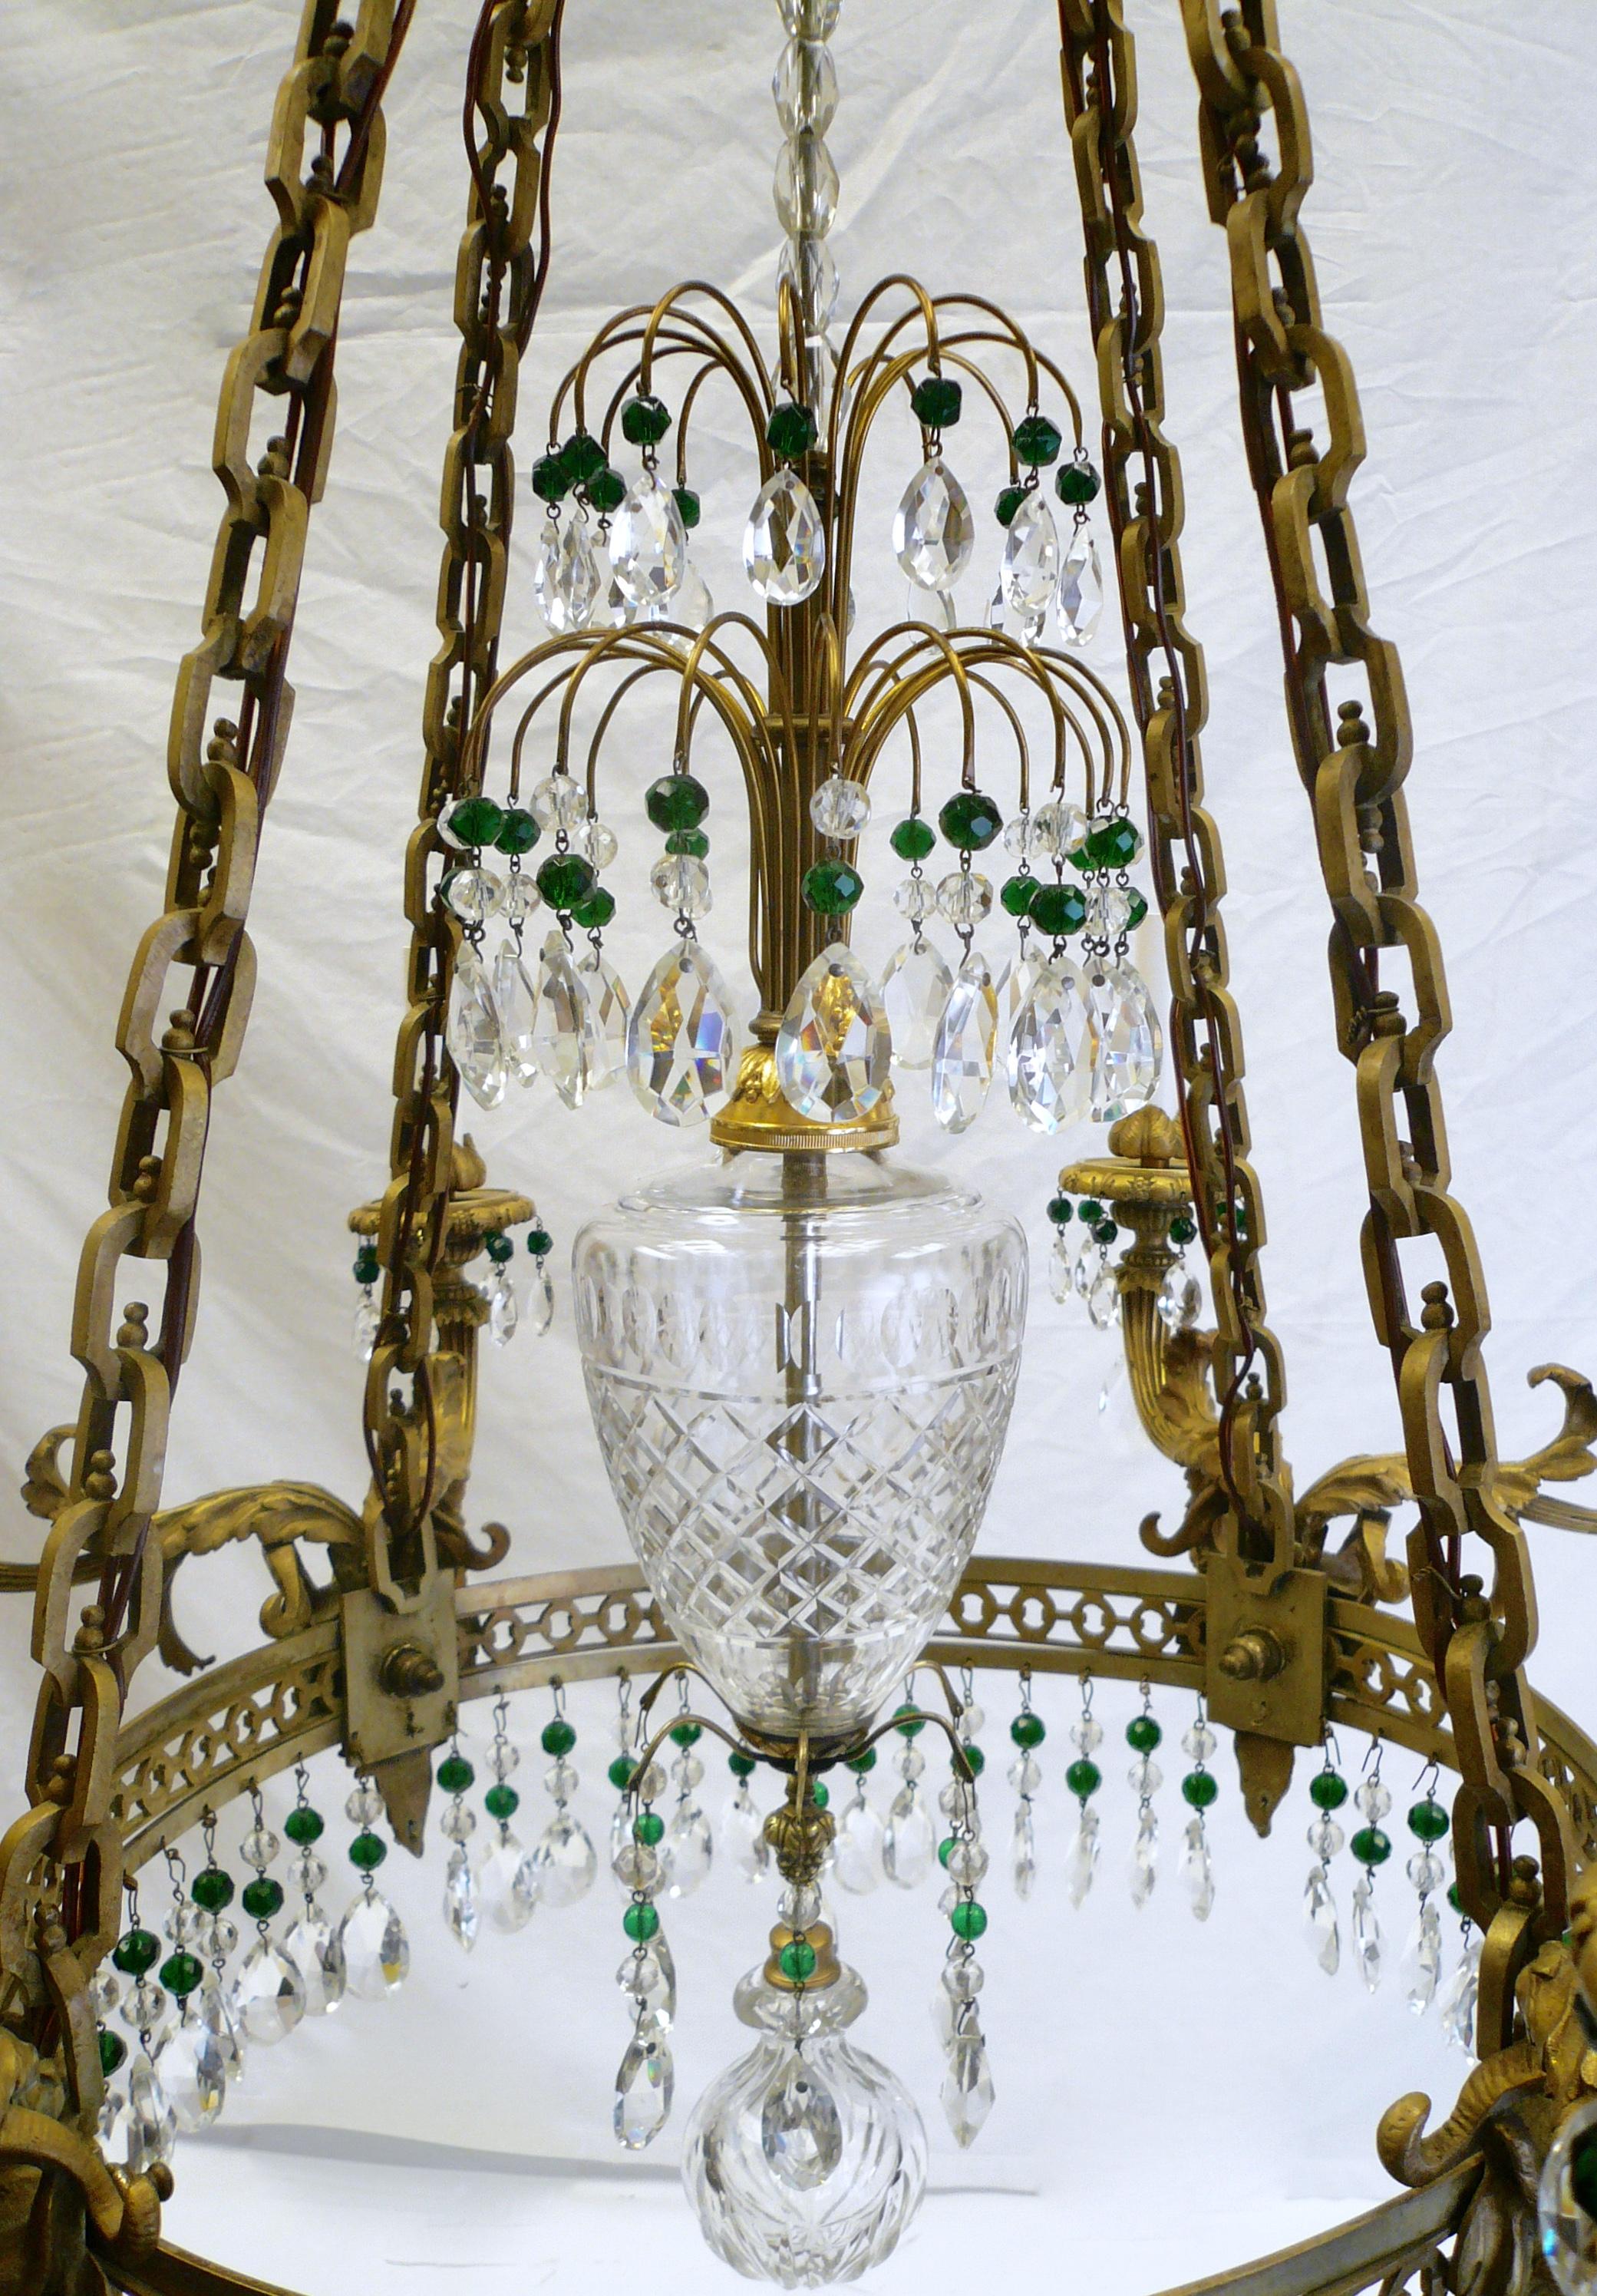 Ce lustre à huit lumières de style Alexander I est composé de cristaux facettés en forme de poire et d'accents en cristal vert émeraude. Le cadre en bronze doré présente des motifs néoclassiques, notamment des feuilles d'acanthe et des têtes de